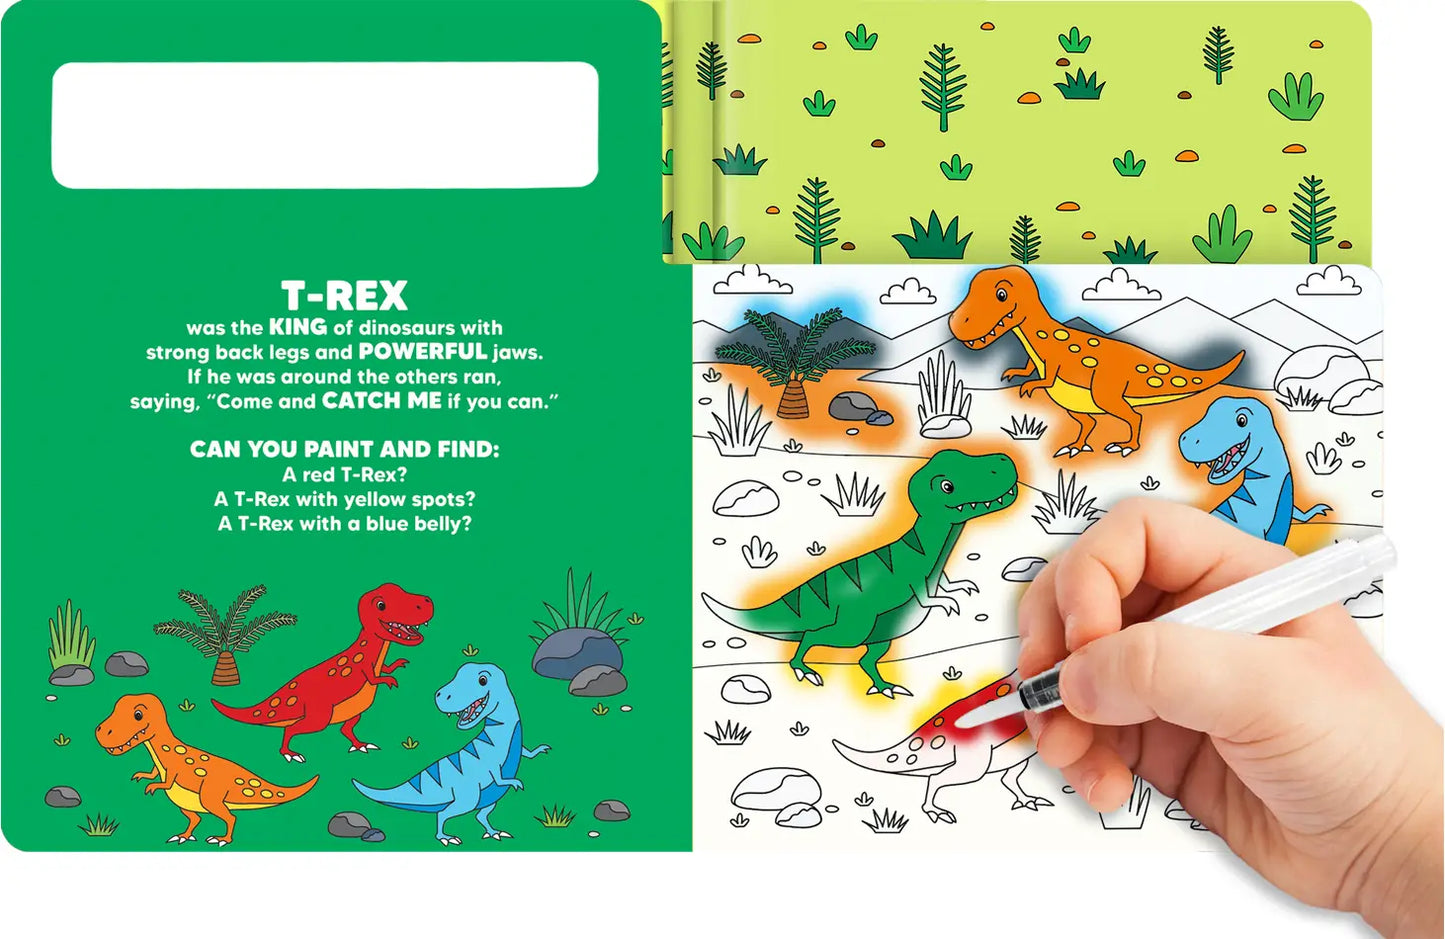 Dipingi e trova i dinosauri - Libro degli acquerelli per bambini